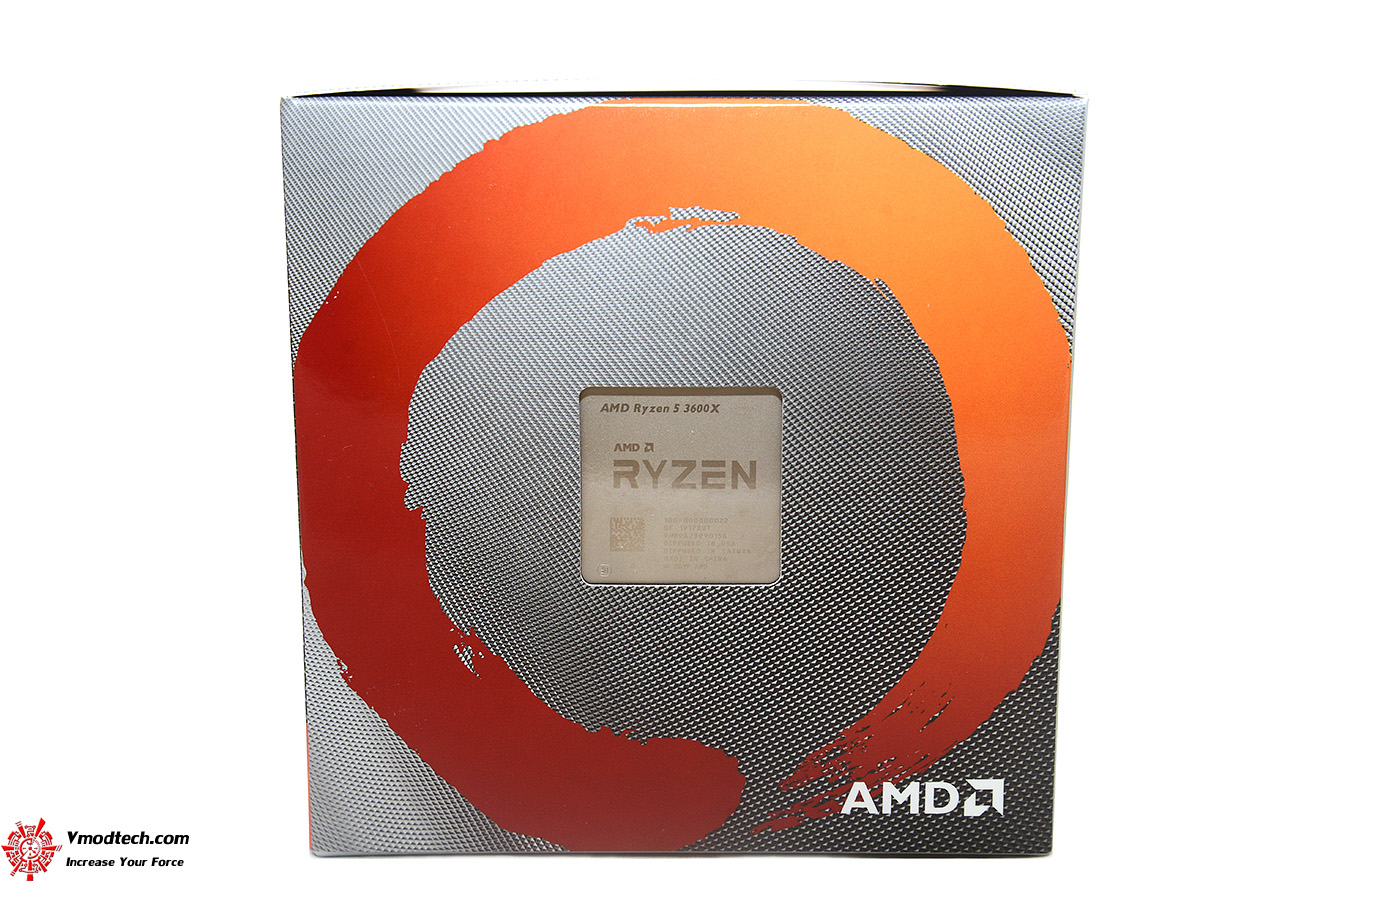 dsc 5895 AMD RYZEN 5 3600X PROCESSOR REVIEW 